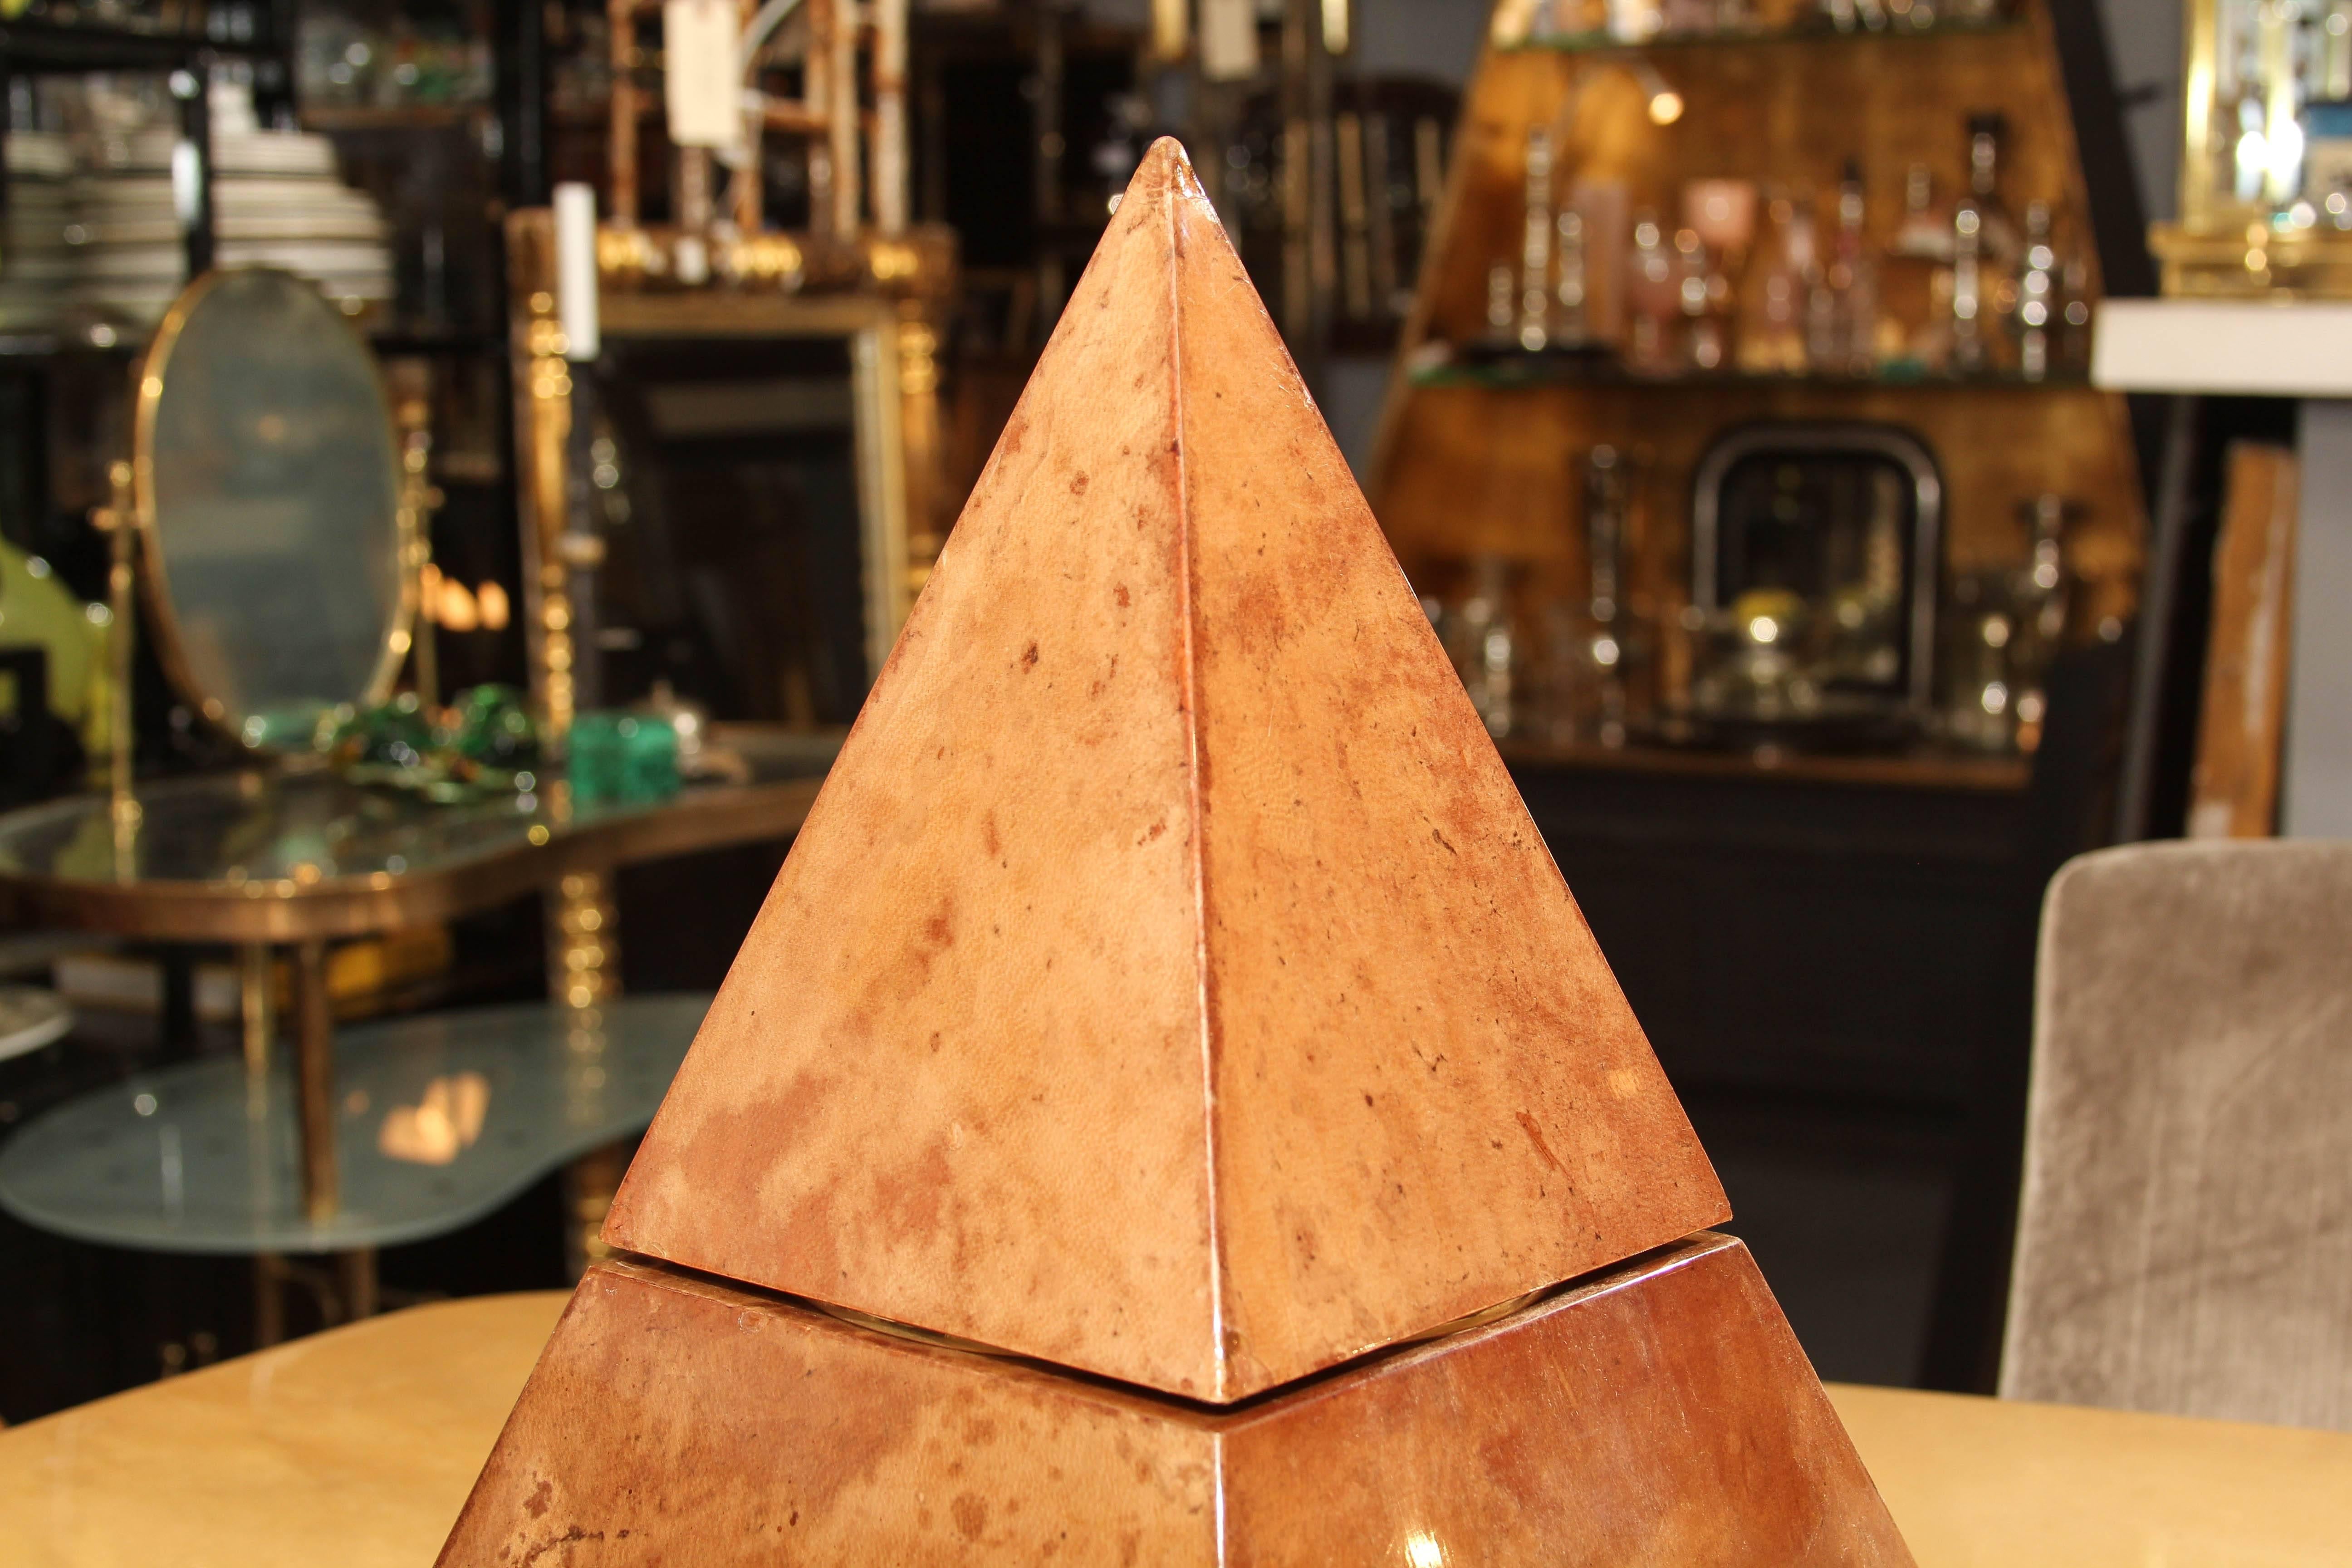 Der Eiskübel, ein seltenes Design von Aldo Tura, ist mit cremefarbenem, lackiertem Ziegenleder überzogen, das insgesamt eine wunderschöne Patina aufweist. Der Behälter selbst ist aus weißem Kunststoff. Die Pyramidenform bietet einen überzeugenden